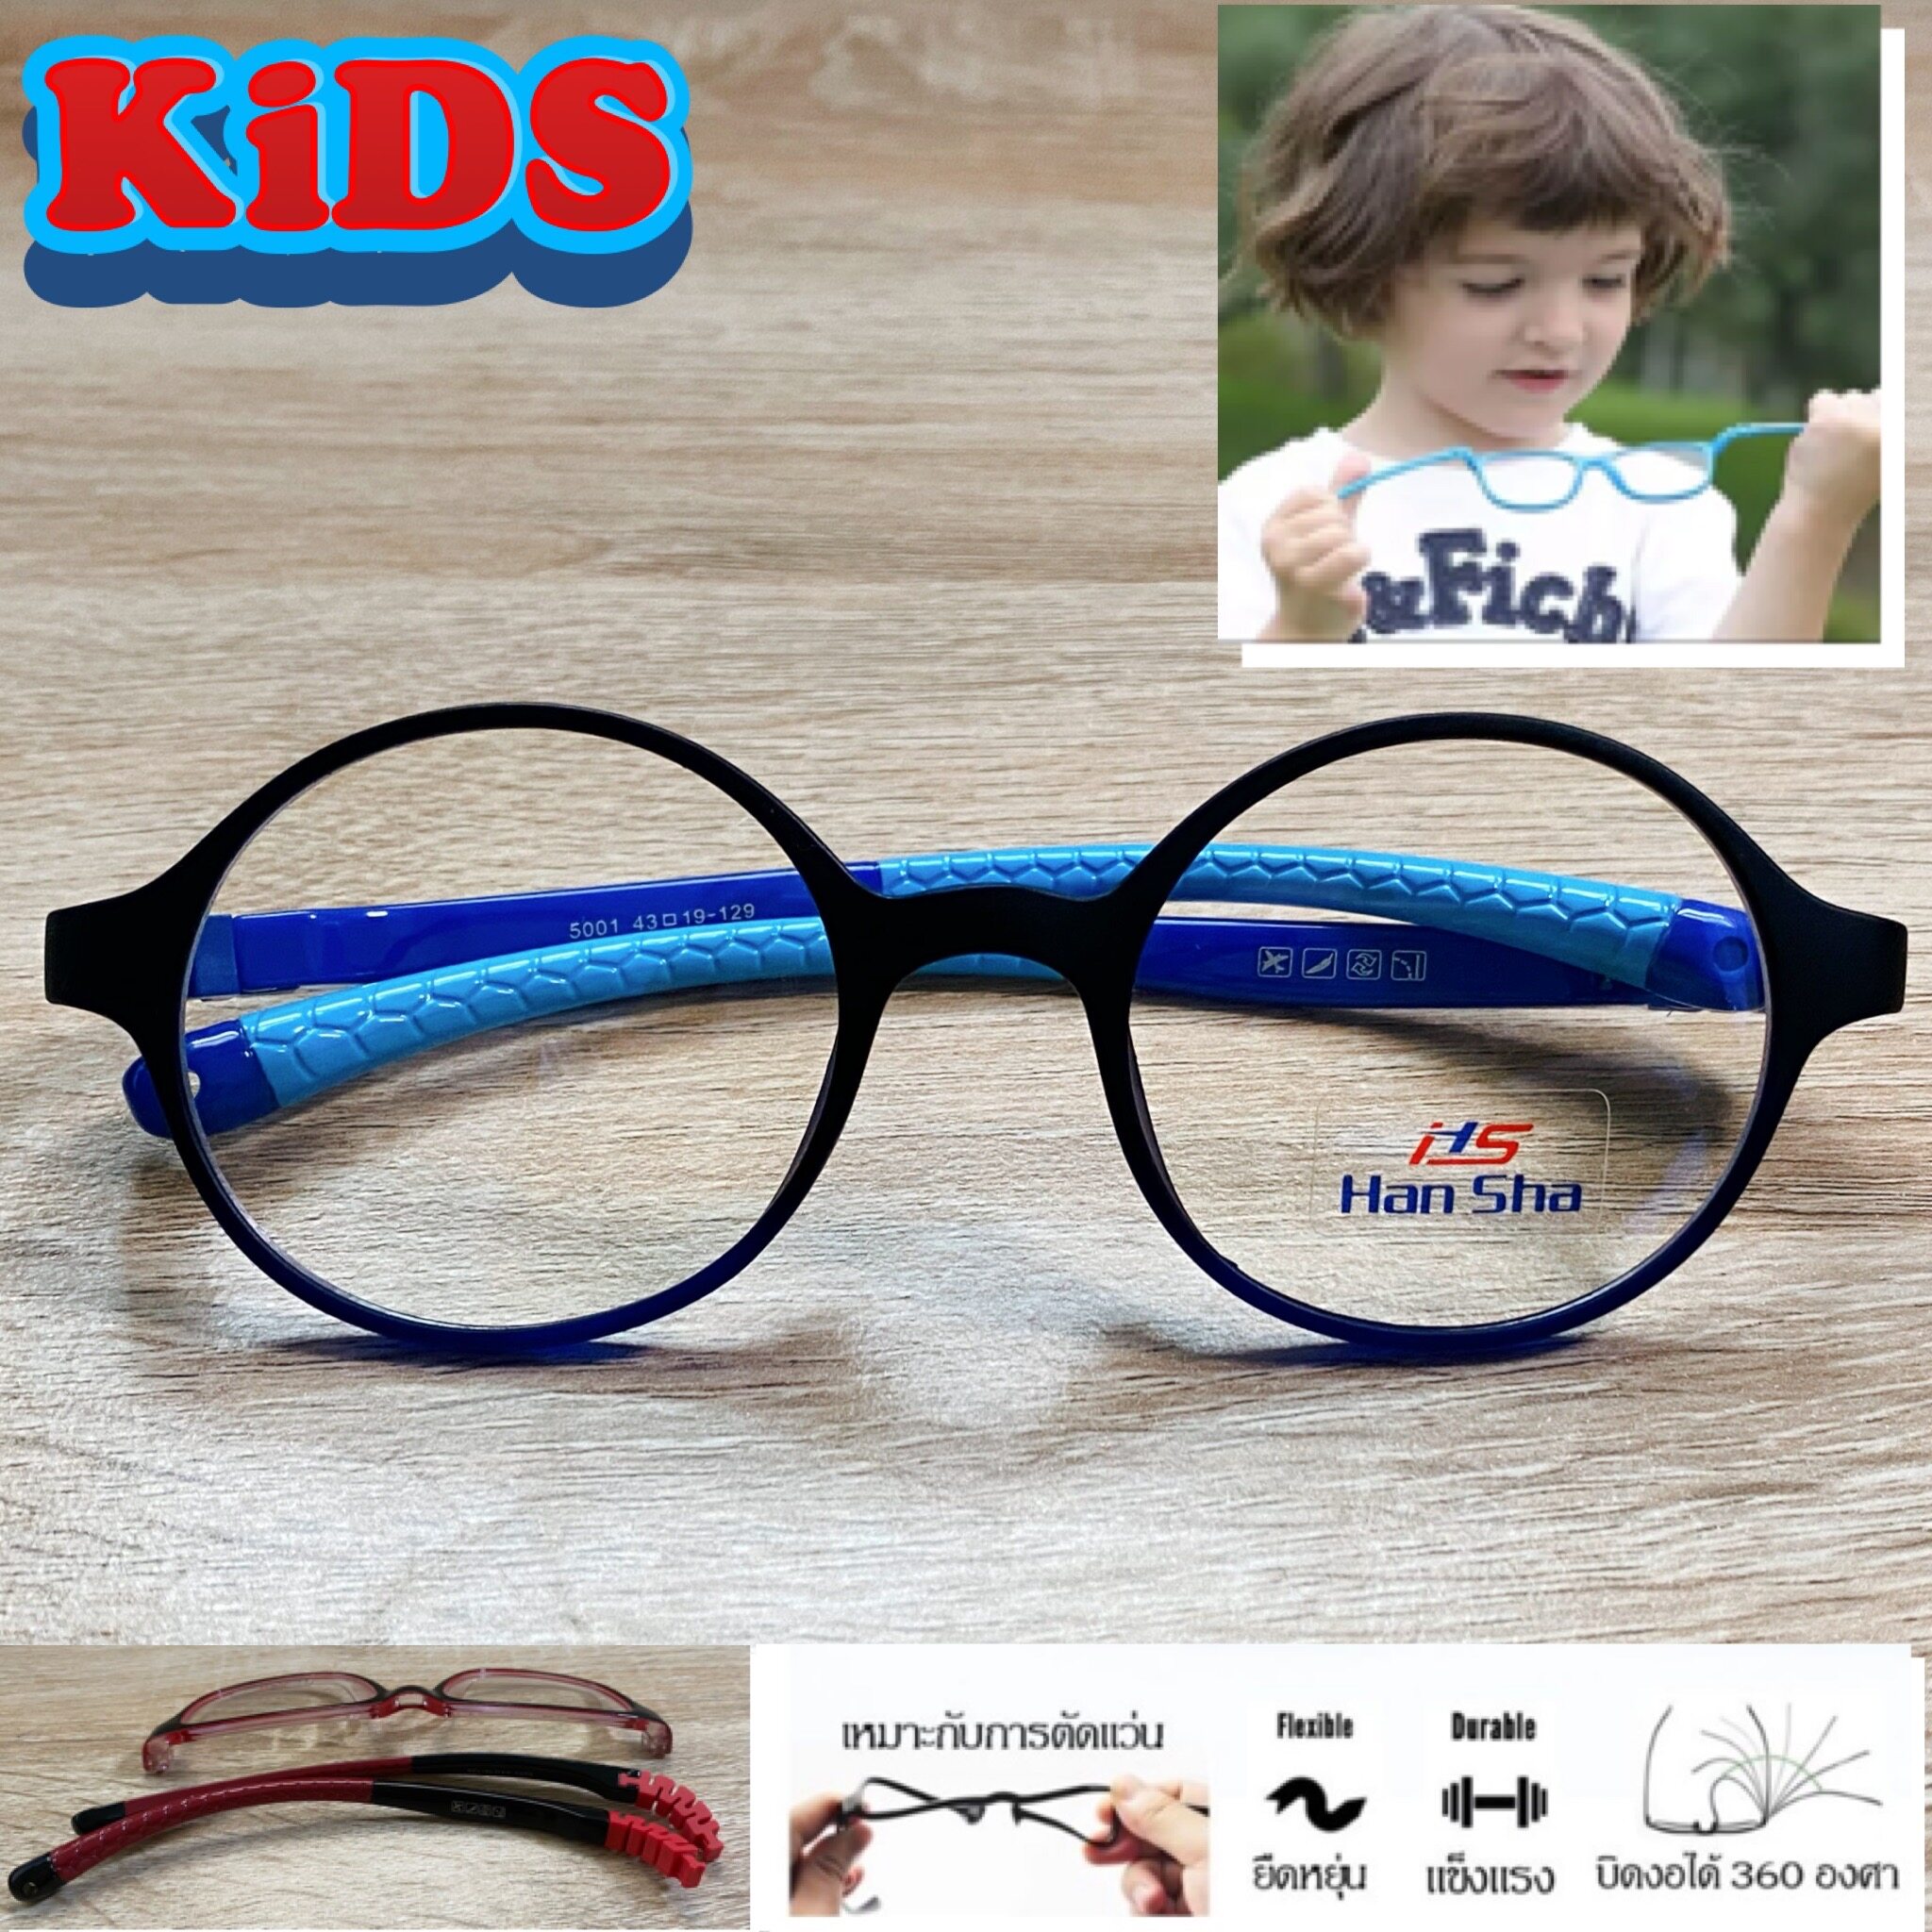 แว่นตาเด็ก กรอบแว่นตาเด็ก สำหรับตัดเลนส์ แว่นตา Han Sha รุ่น 5001 สีดำขาฟ้า ขาไม่ใช้น็อต ยืดหยุ่น ถอดขาเปลี่ยนได้ วัสดุ TR 90 เบา ไม่แตกหัก